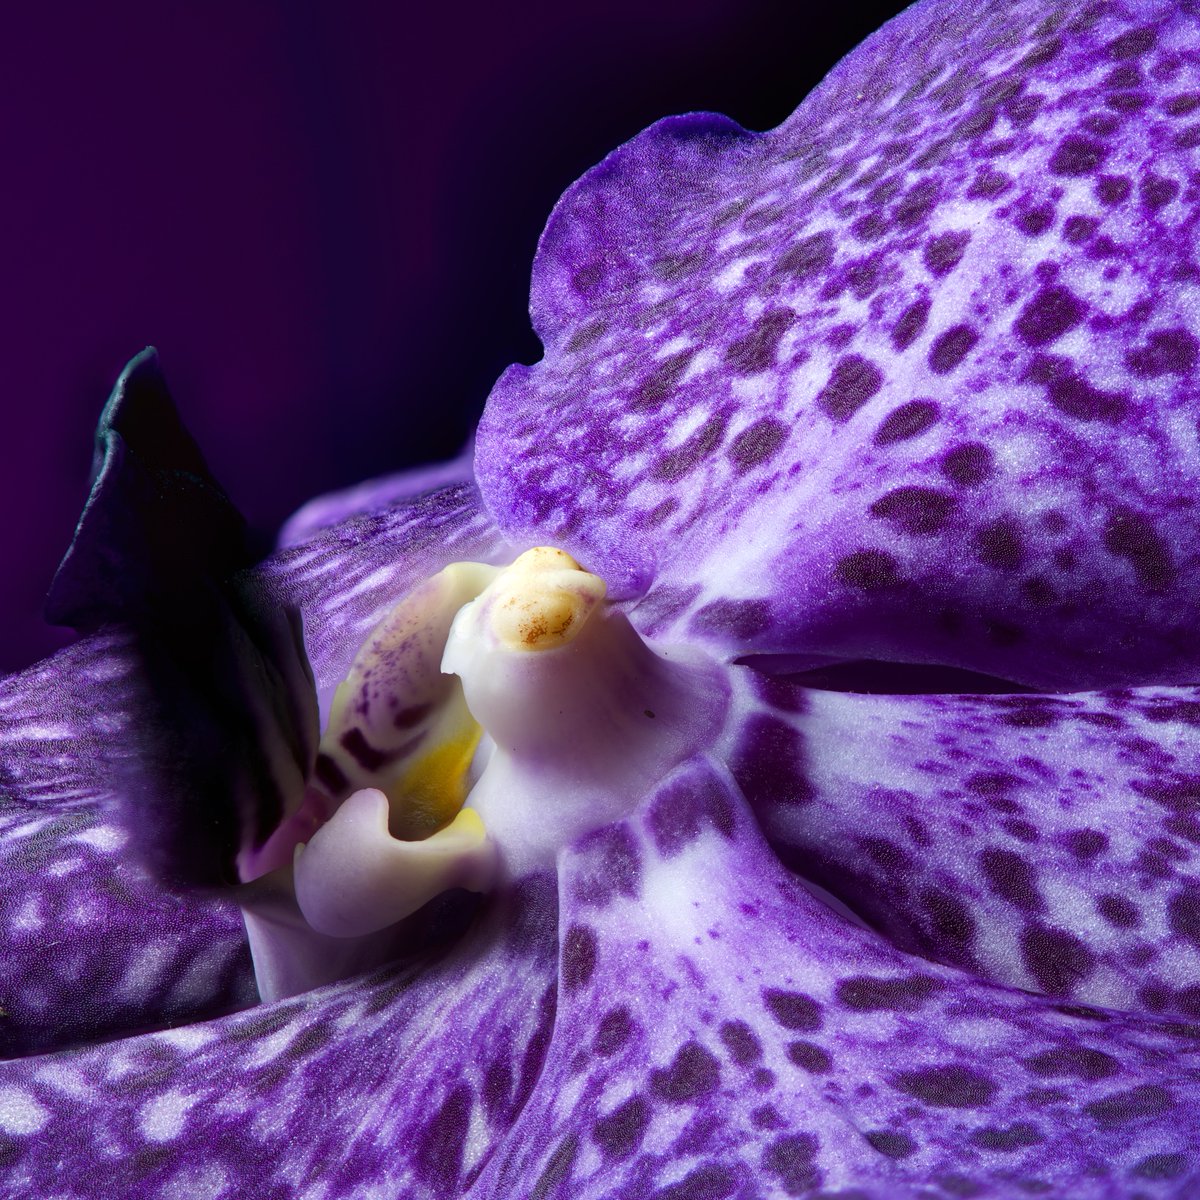 Flower photo of the day. Purple Orchid. #macro #flowers #bloemenfotografie #flowersandmacro #bloemen #blumen #fleurs #raw_flowers #snap_flowers